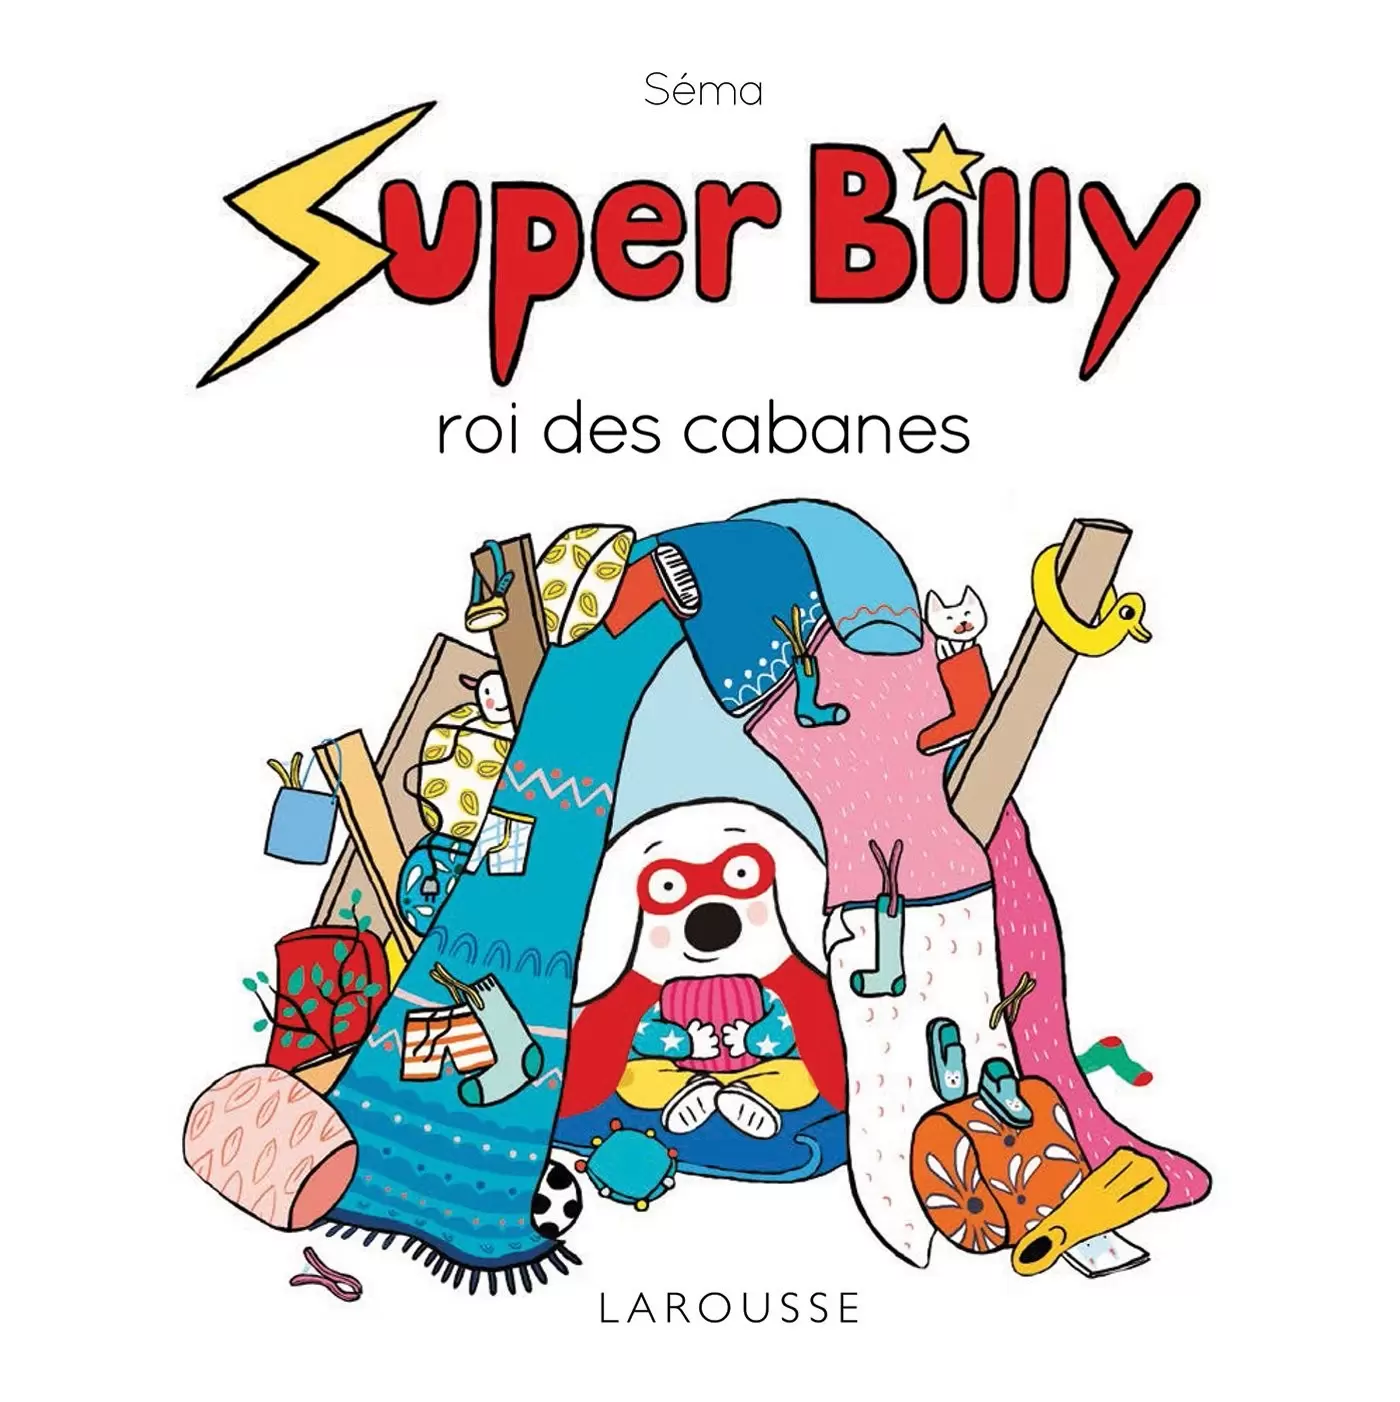 Super Billy - Super Billy roi des cabanes